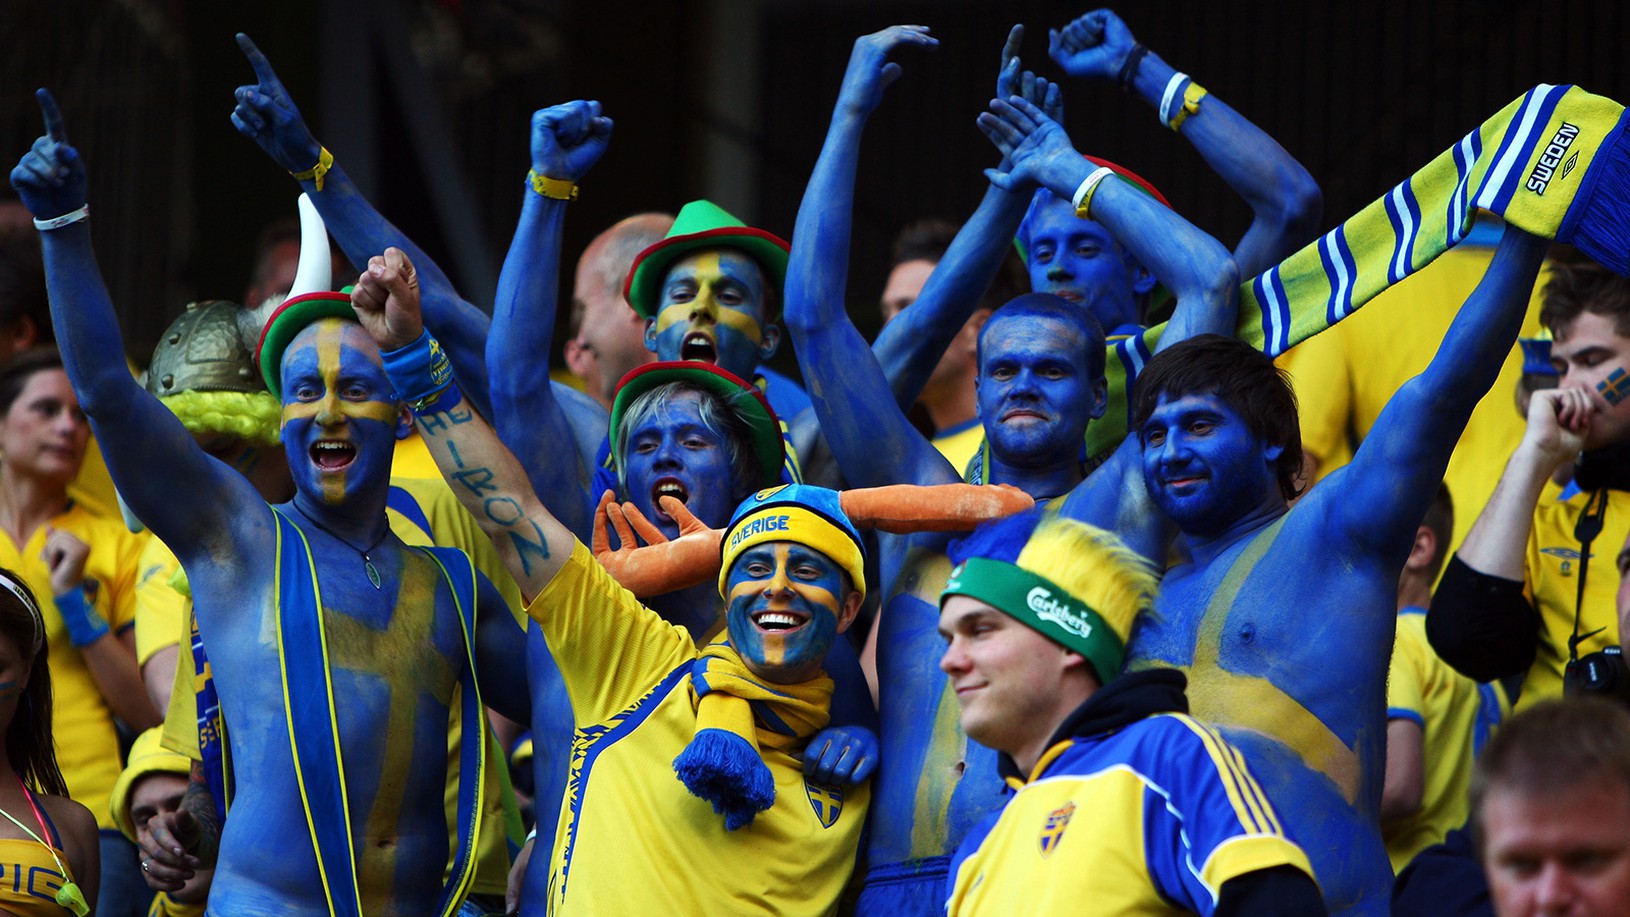 Švédski fanúšikovia